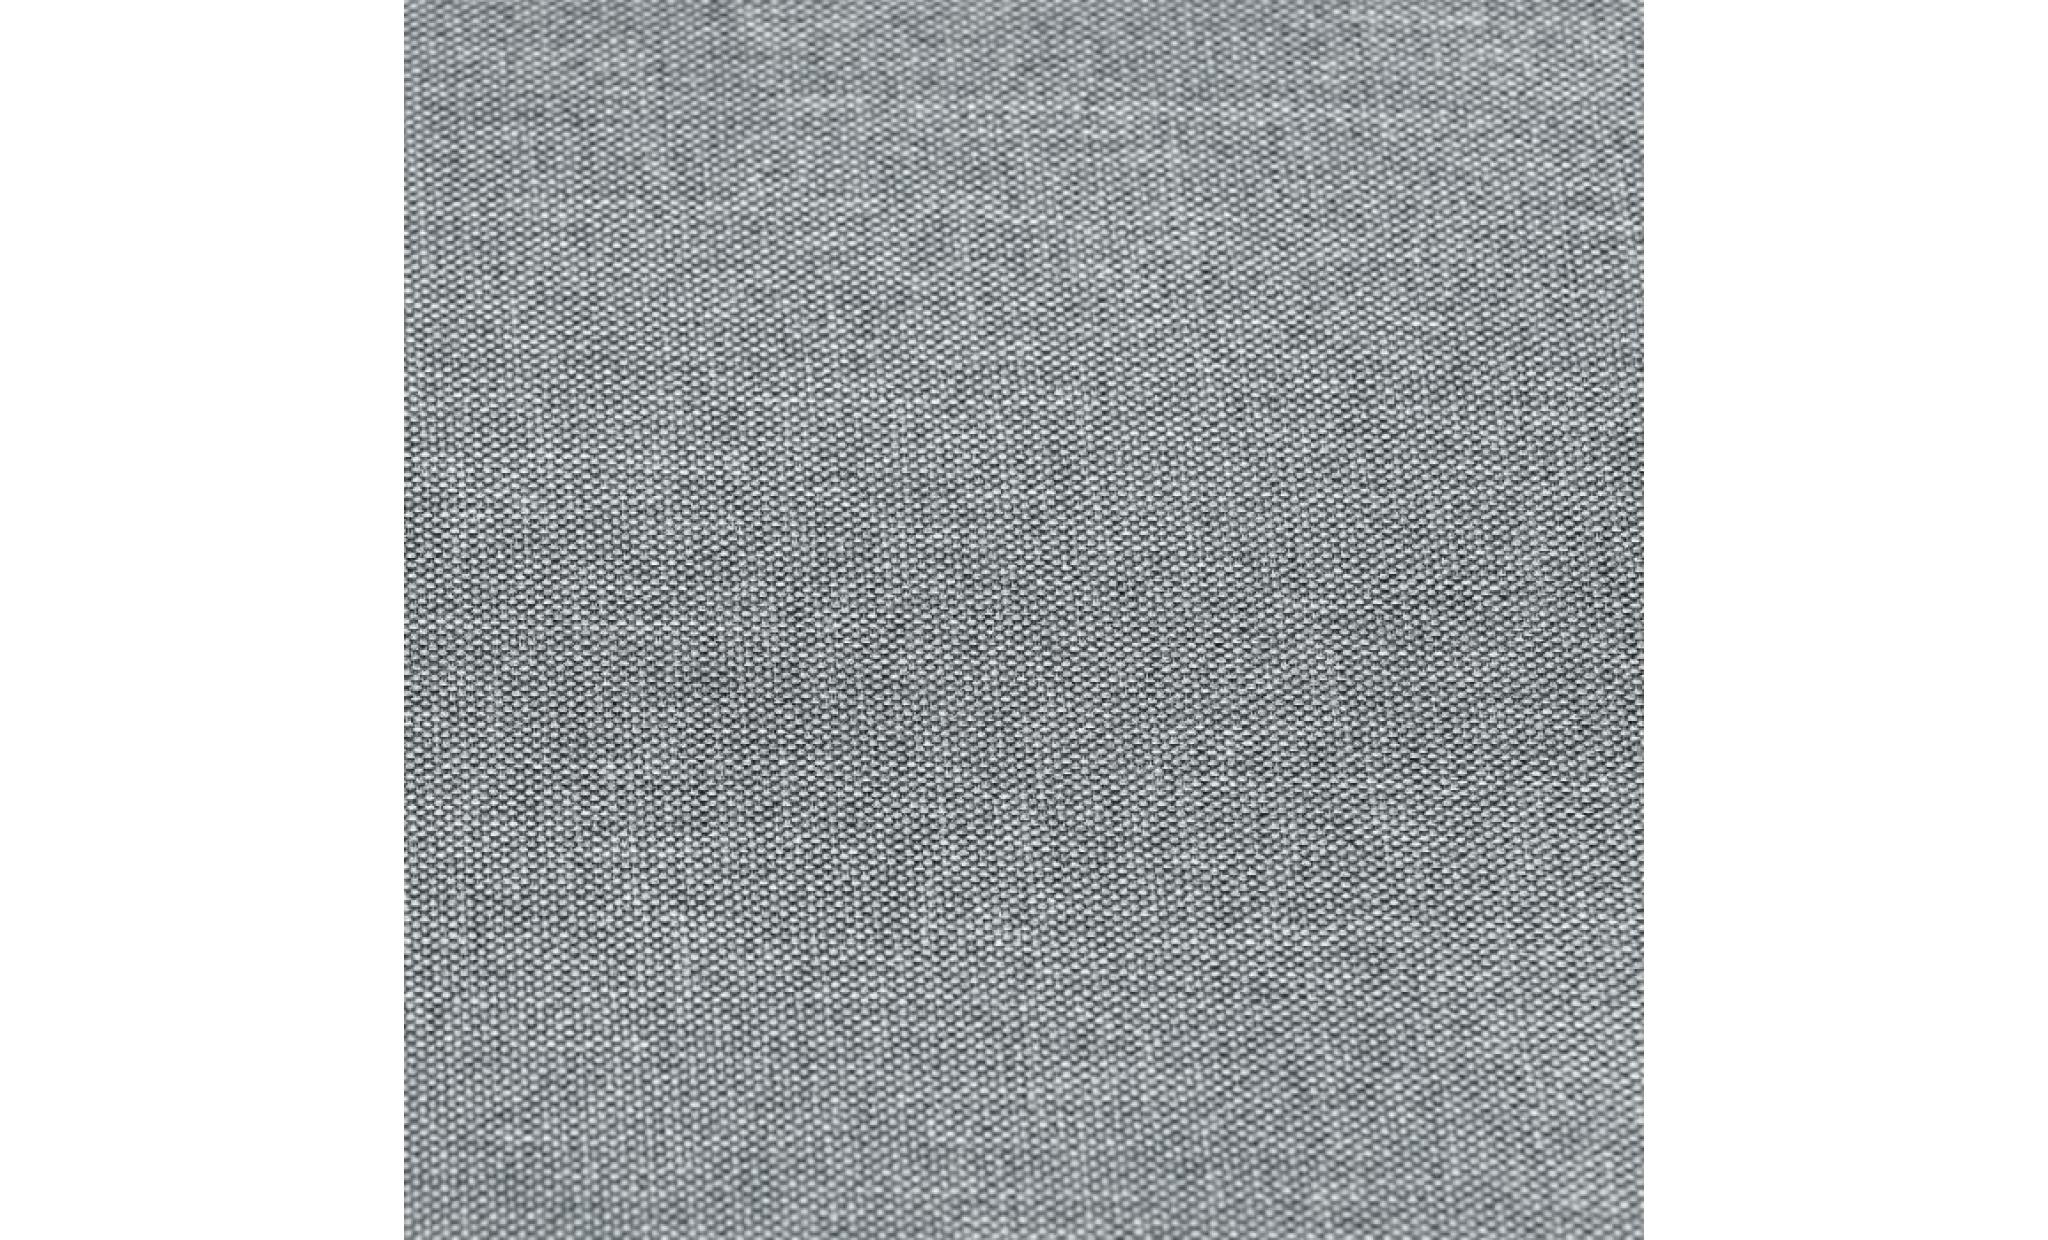 ibra canapé angle réversible 3/4 places   tissu gris   scandinave   l 203 x p 88 130 cm pas cher